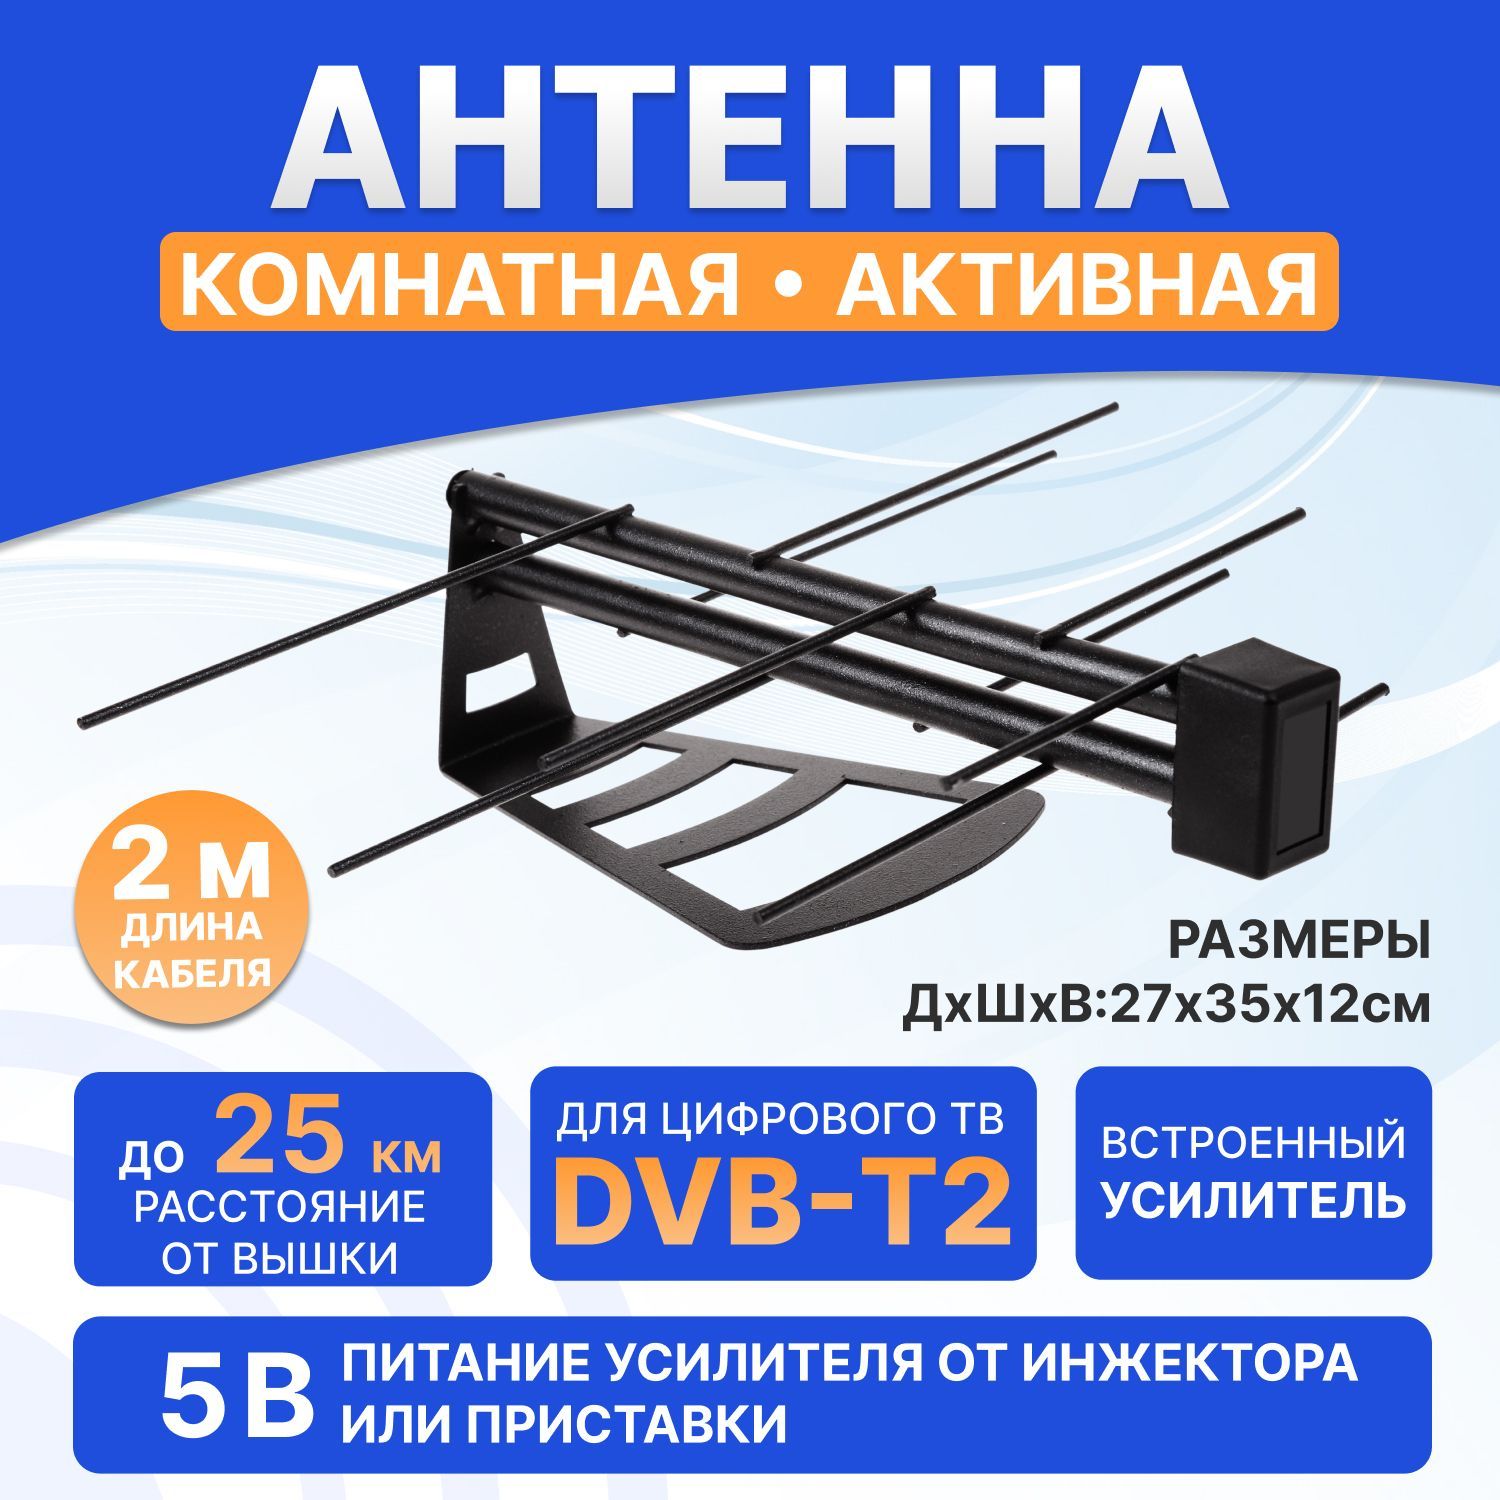 Цифровая антенна DVB T2 для ТВ (телевидения) - купить по лучшей цене в manikyrsha.ru